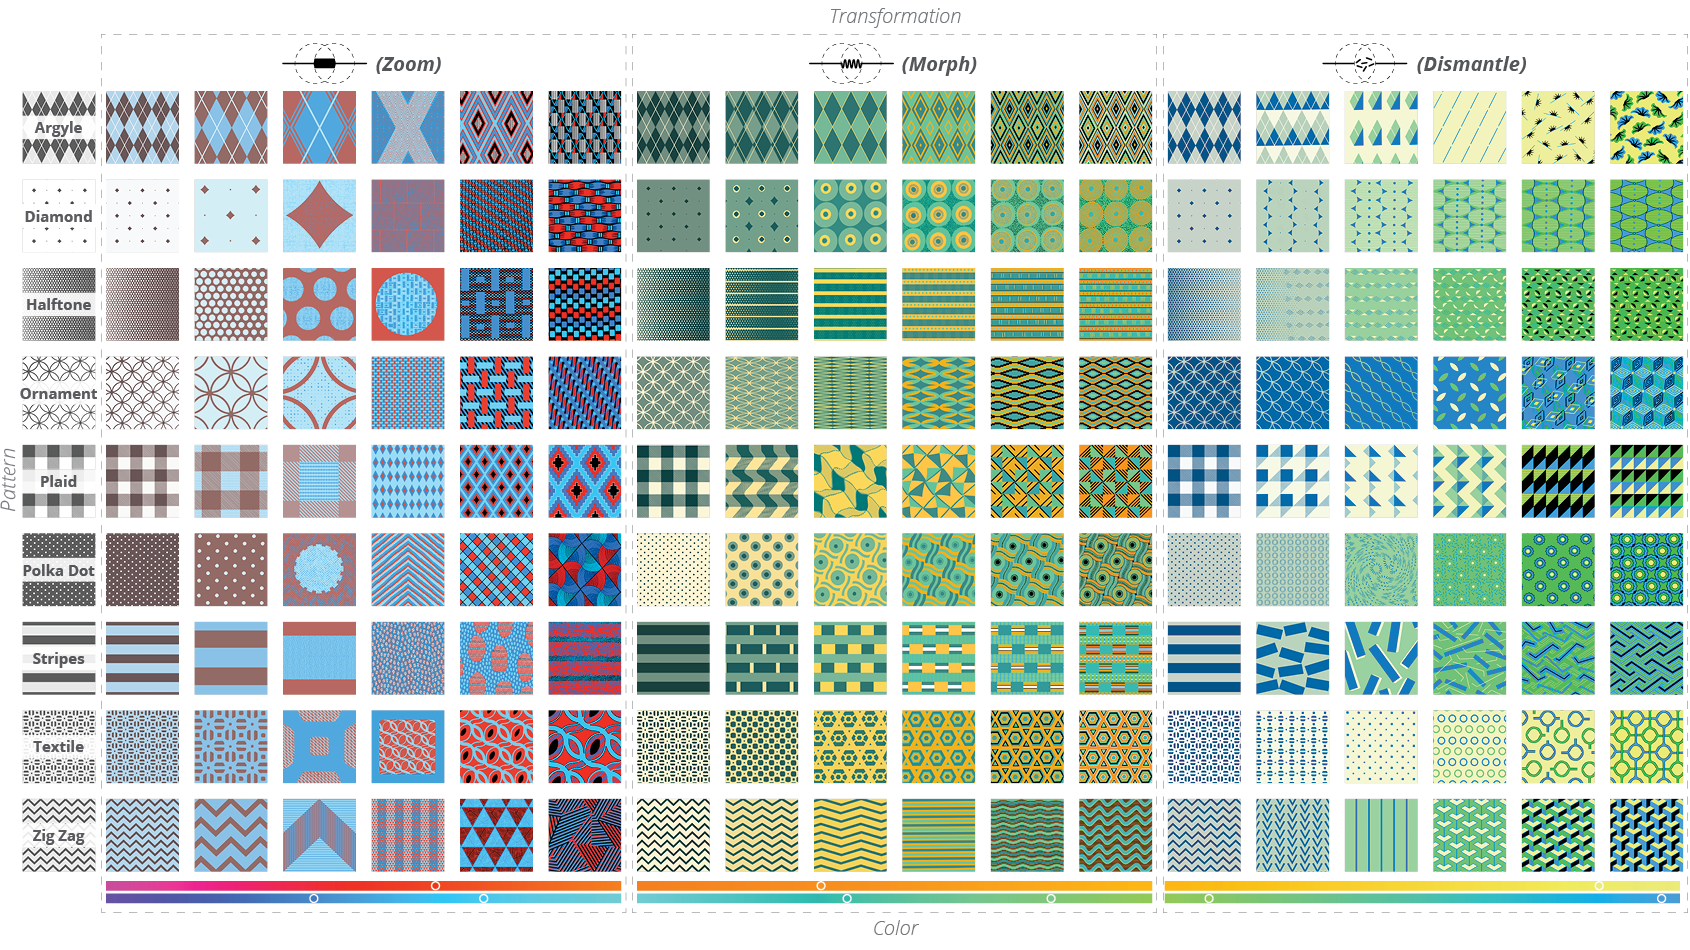 Full pattern matrix